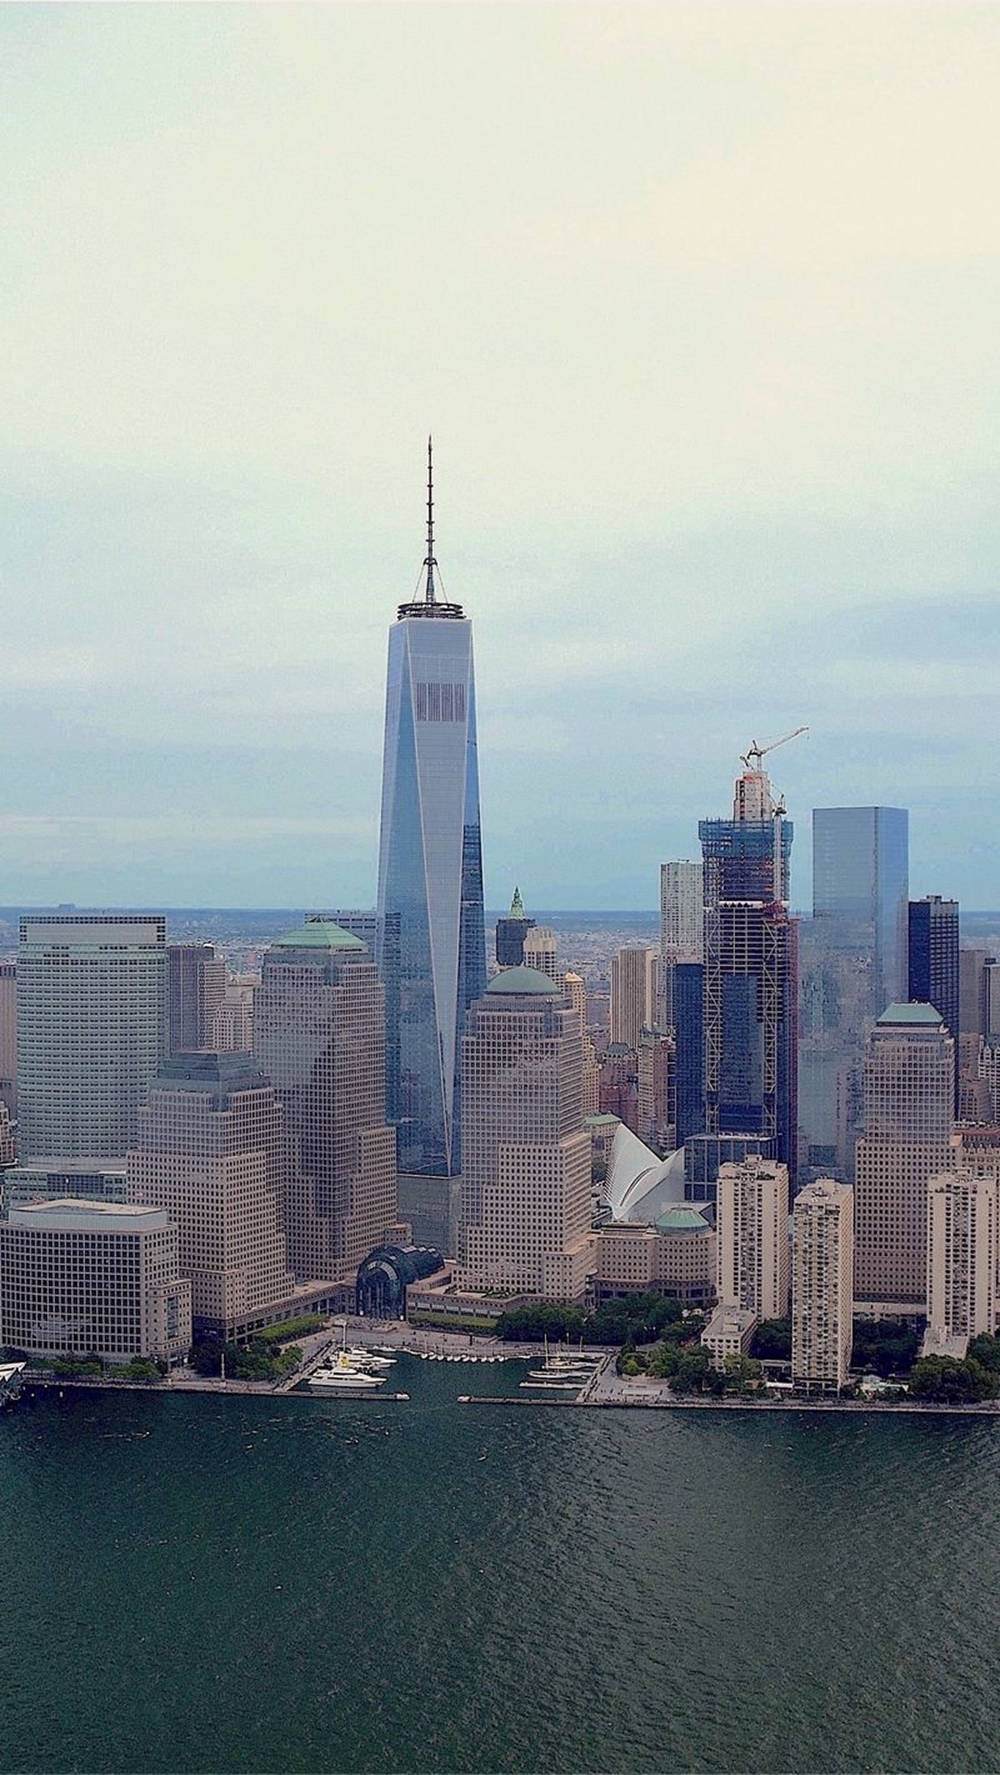 Unosfondo Per Telefoni Con L'immagine Dello Skyline Di New York City, Con La One World Trade Center In Primo Piano. Sfondo